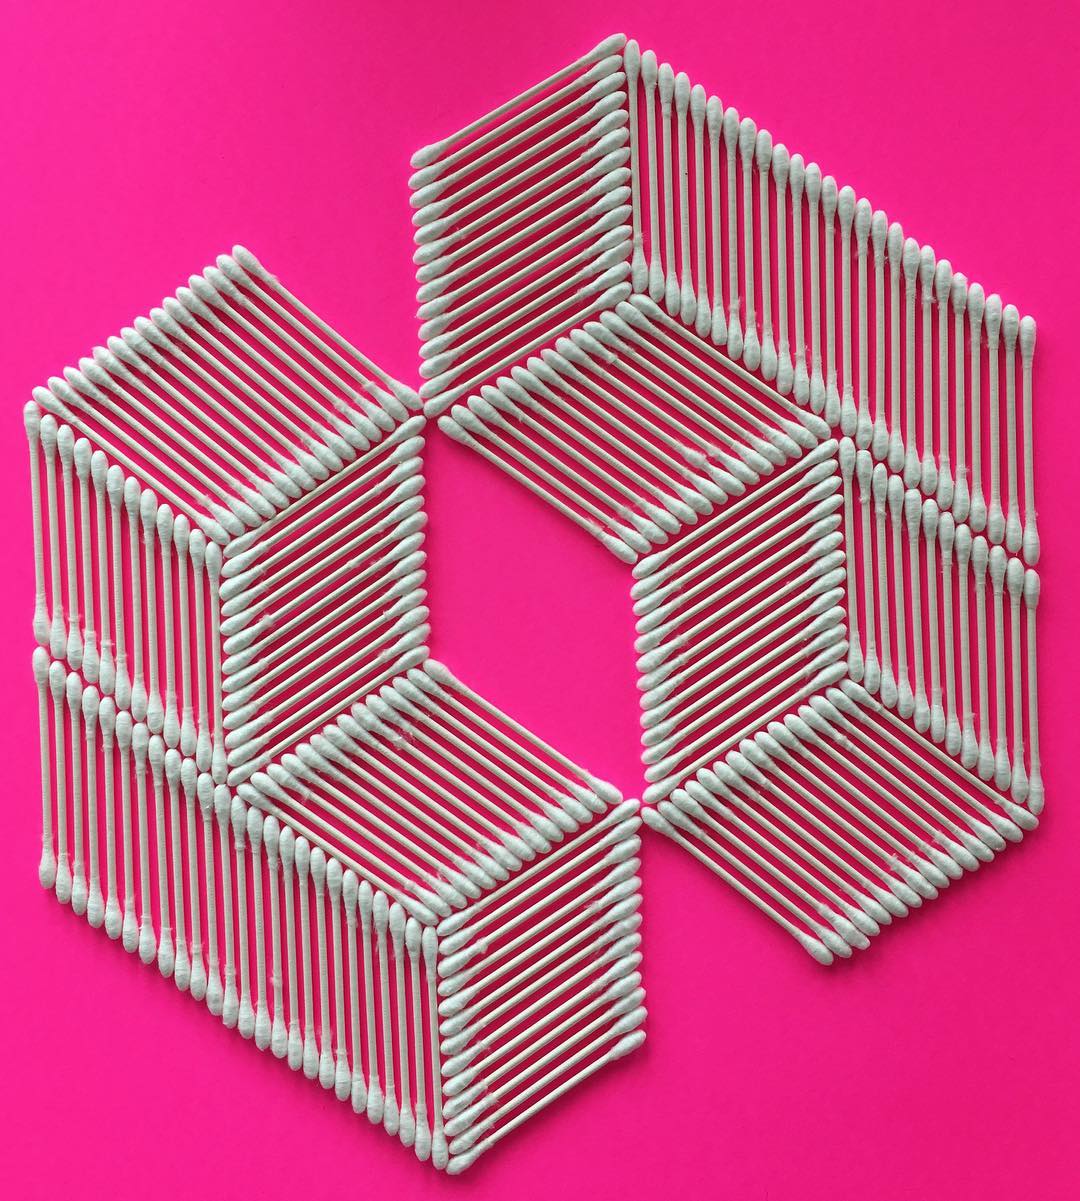 Adam Hillman transforme les objets du quotidien en formes géométriques hypnotisantes